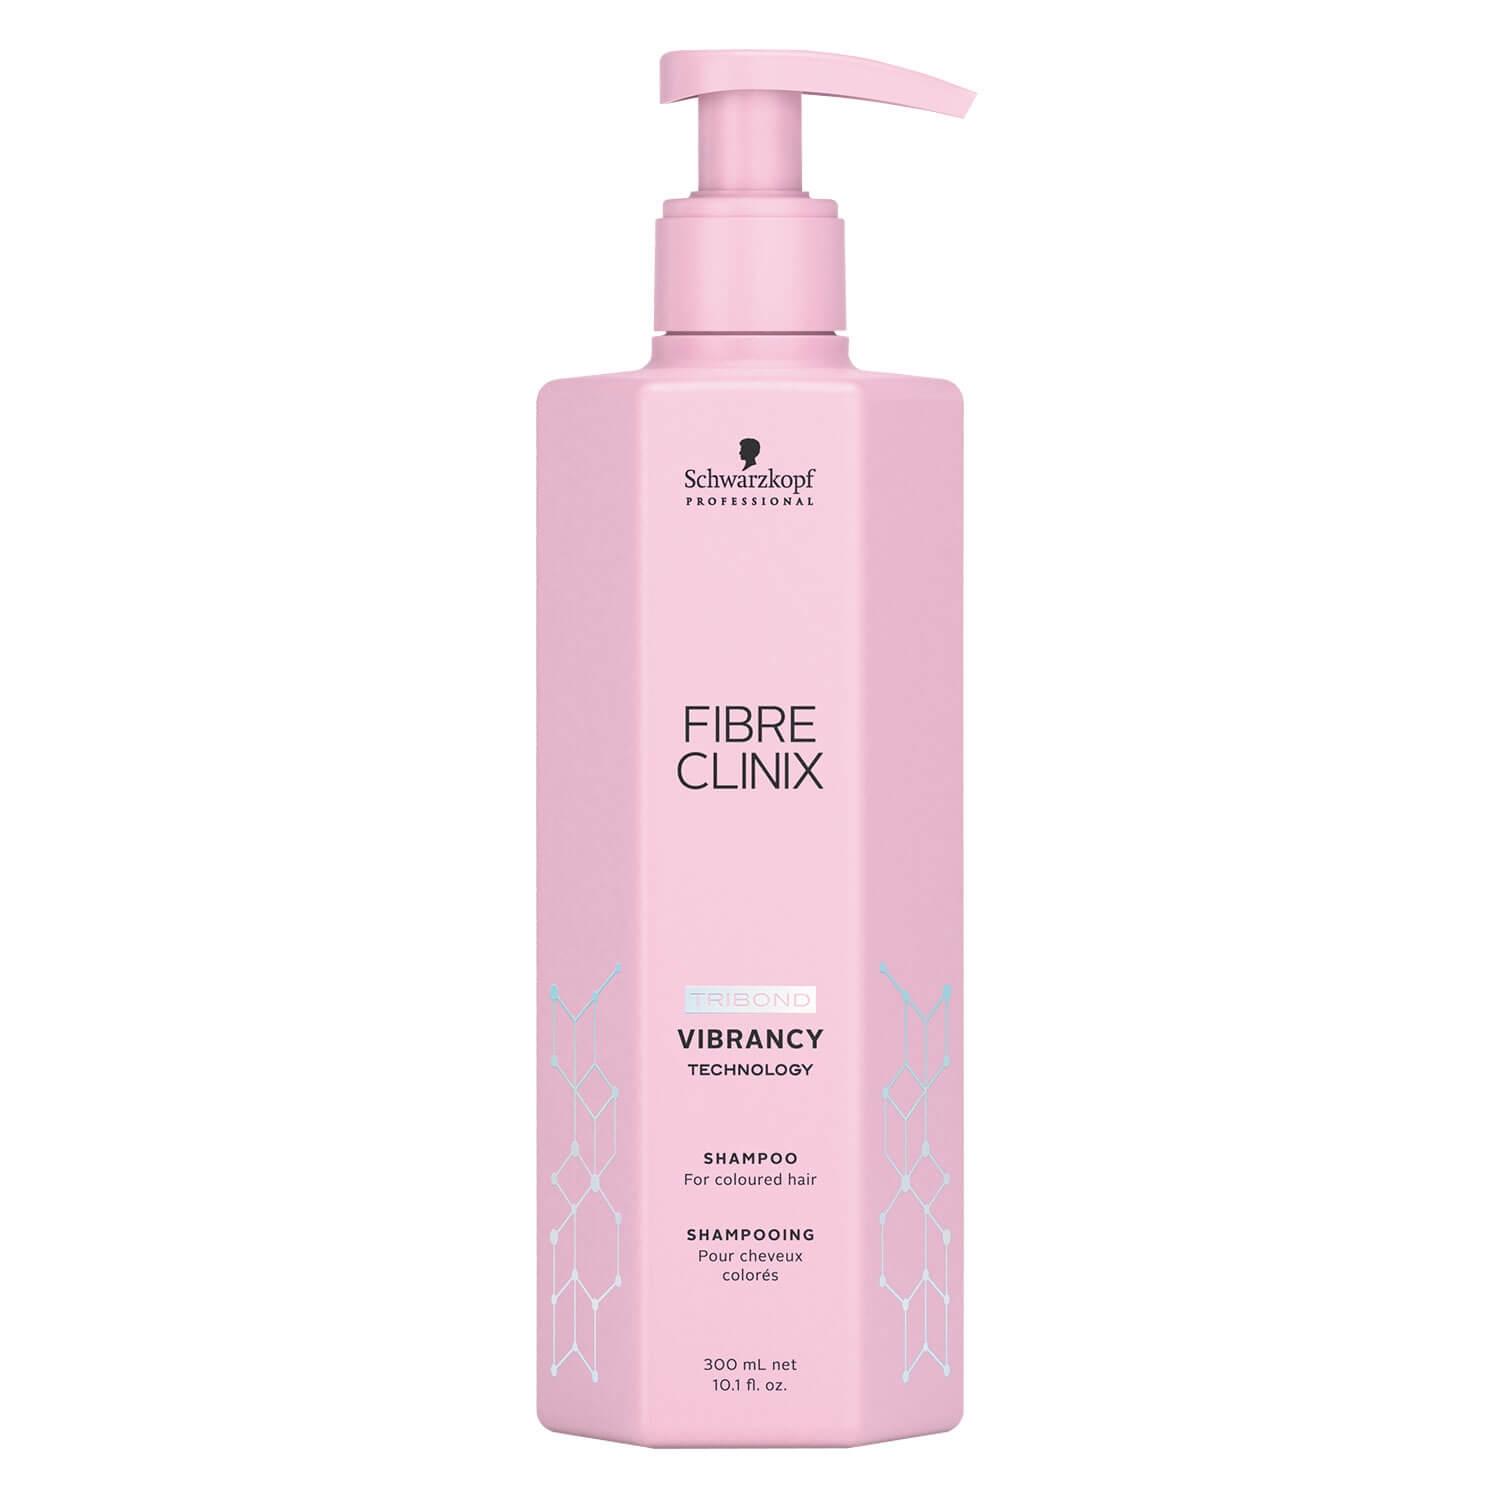 Produktbild von Fibre Clinix - Vibrancy Shampoo